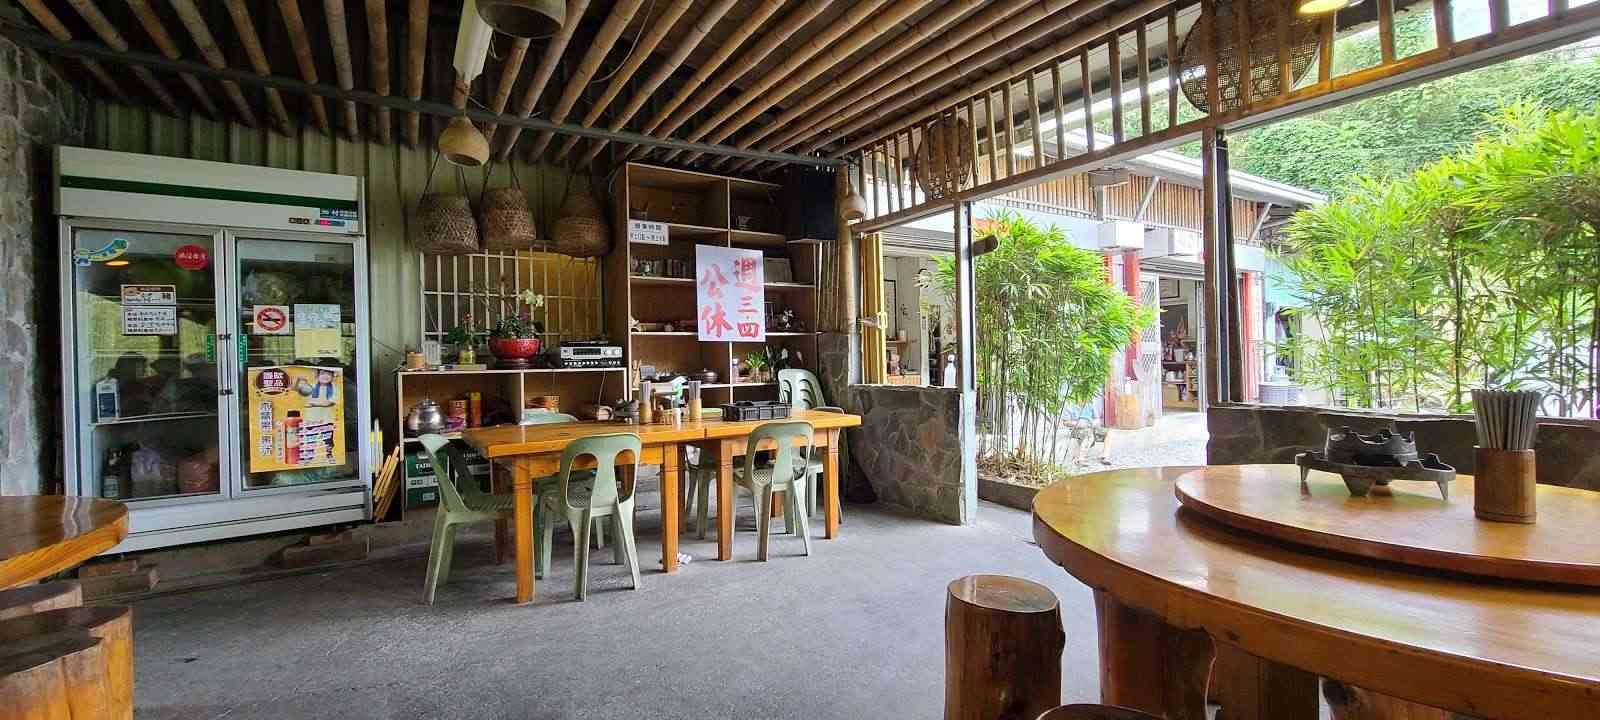 竹棧餐廳/ 攝影者: Hsu Mark

(由第三方資訊提供)